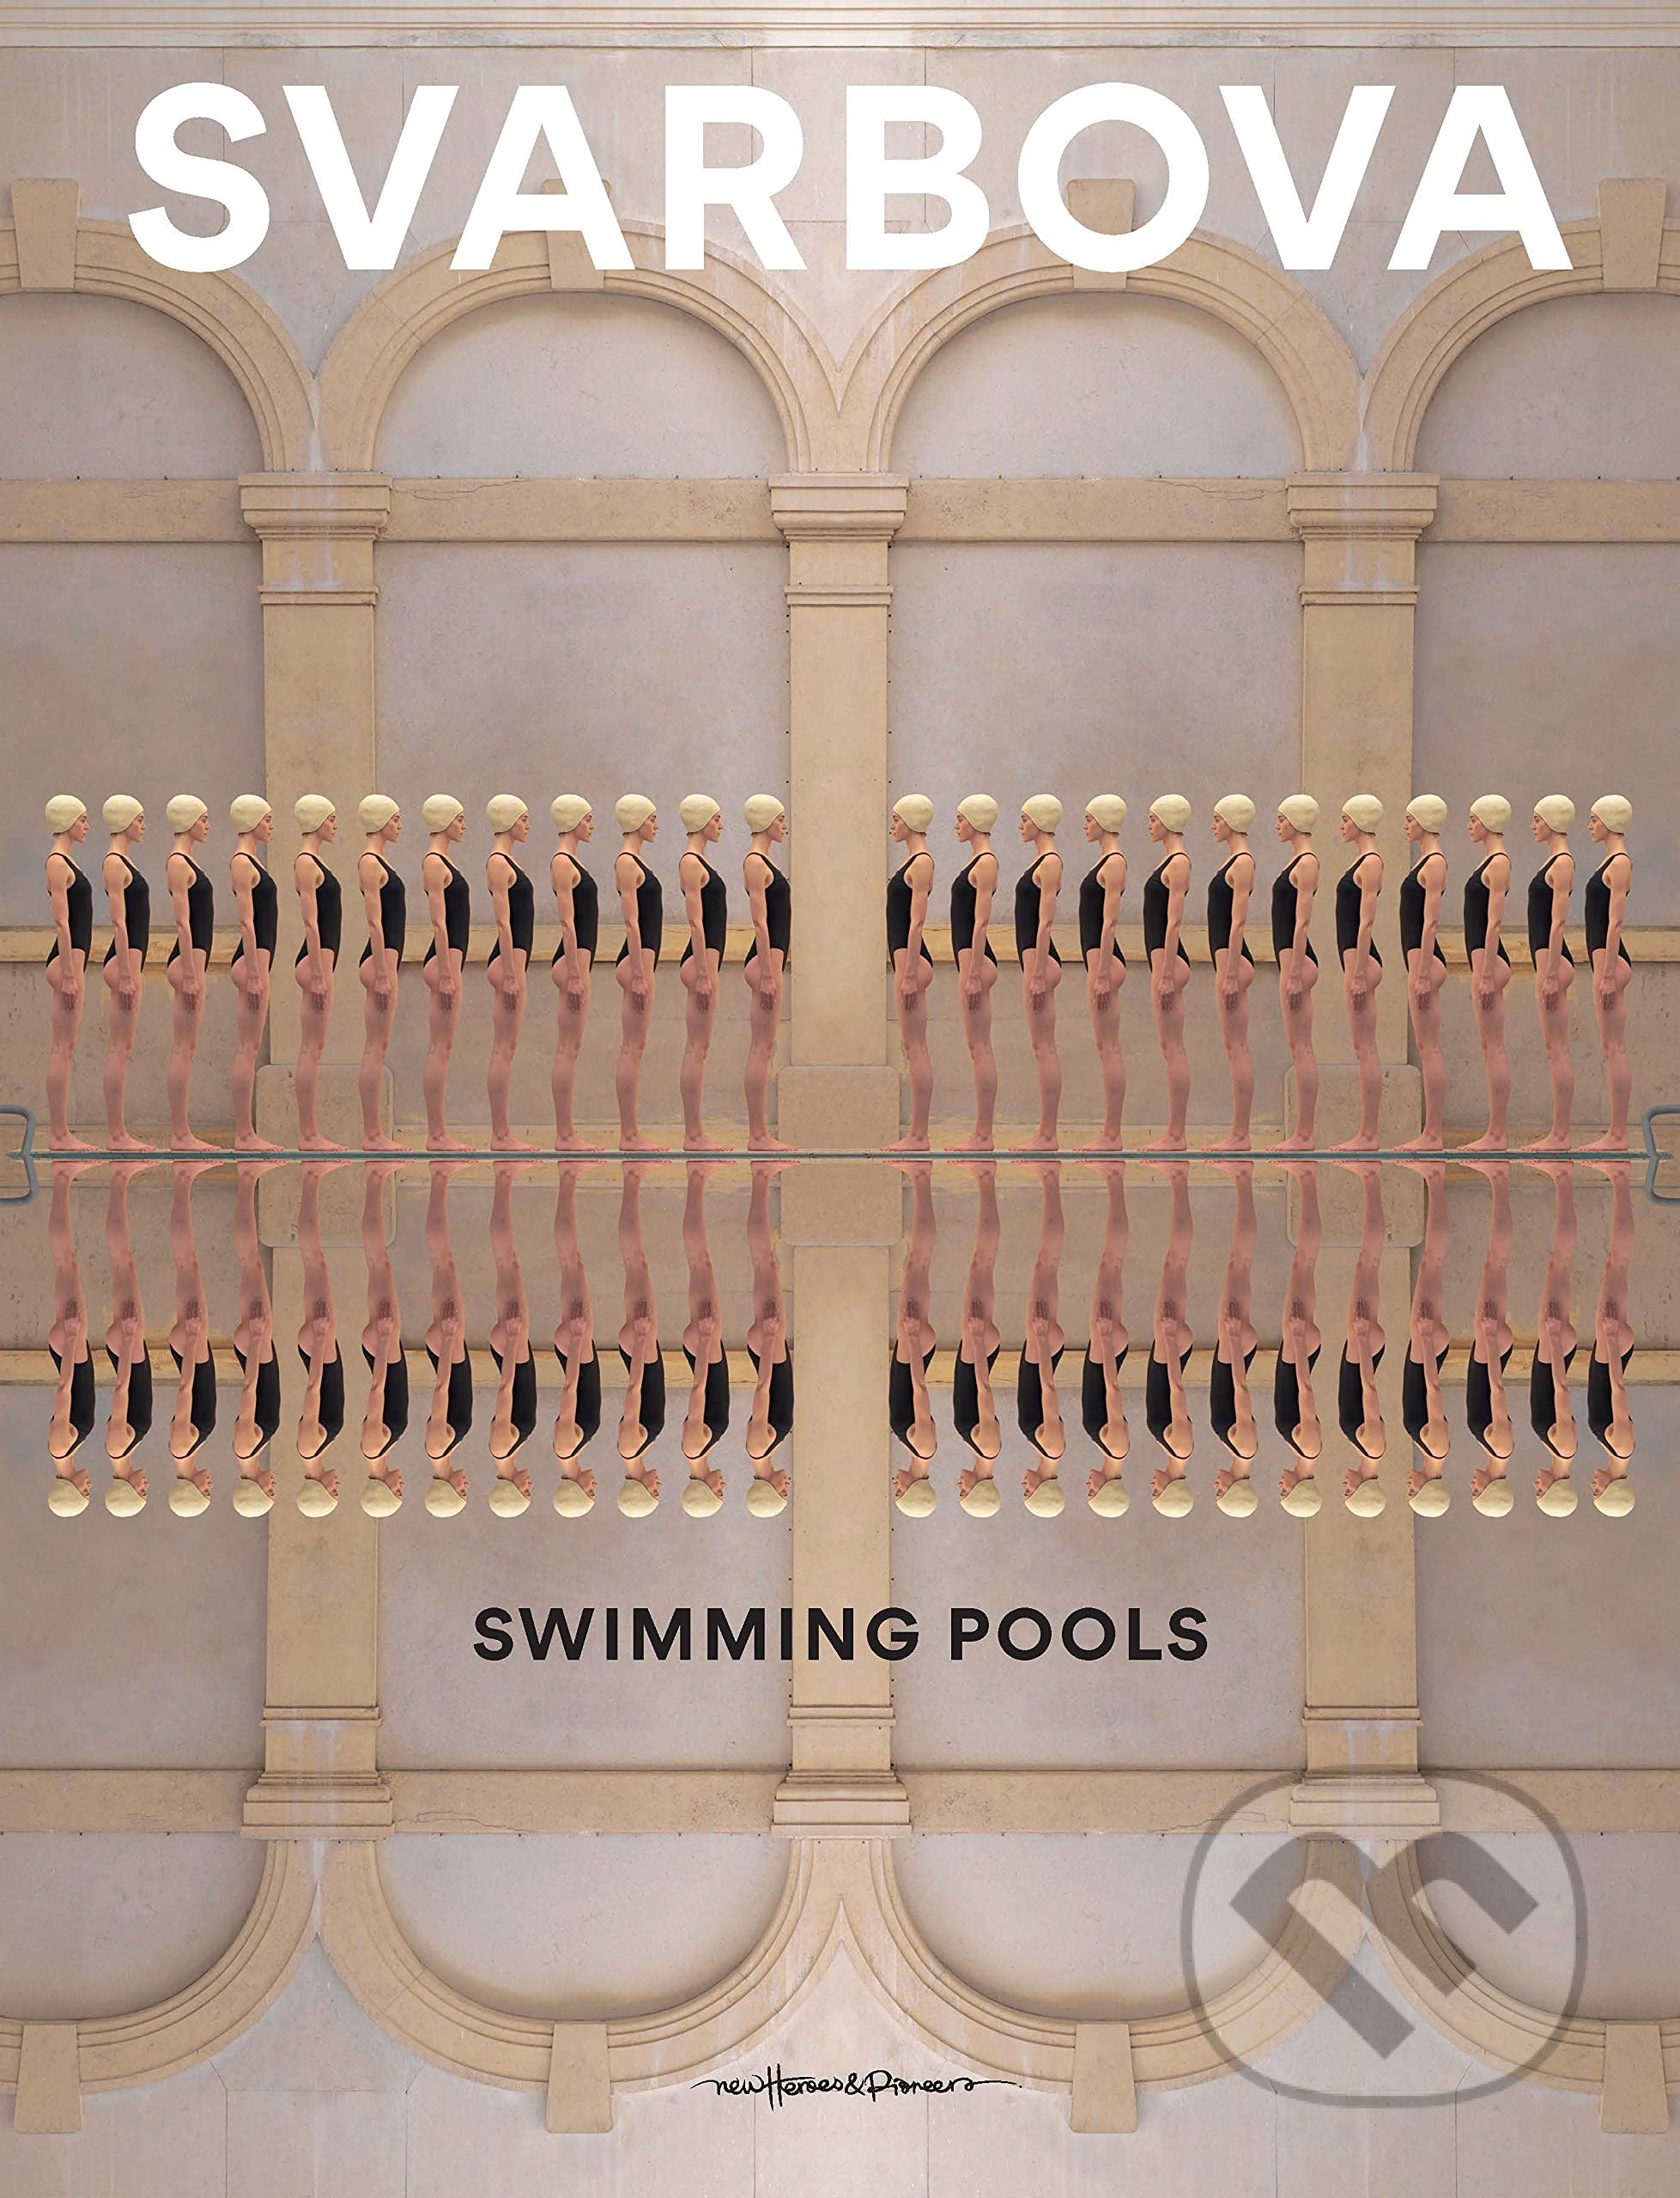 Swimming Pools - Mária Švarbová, New Heroes and Pioneers, 2021